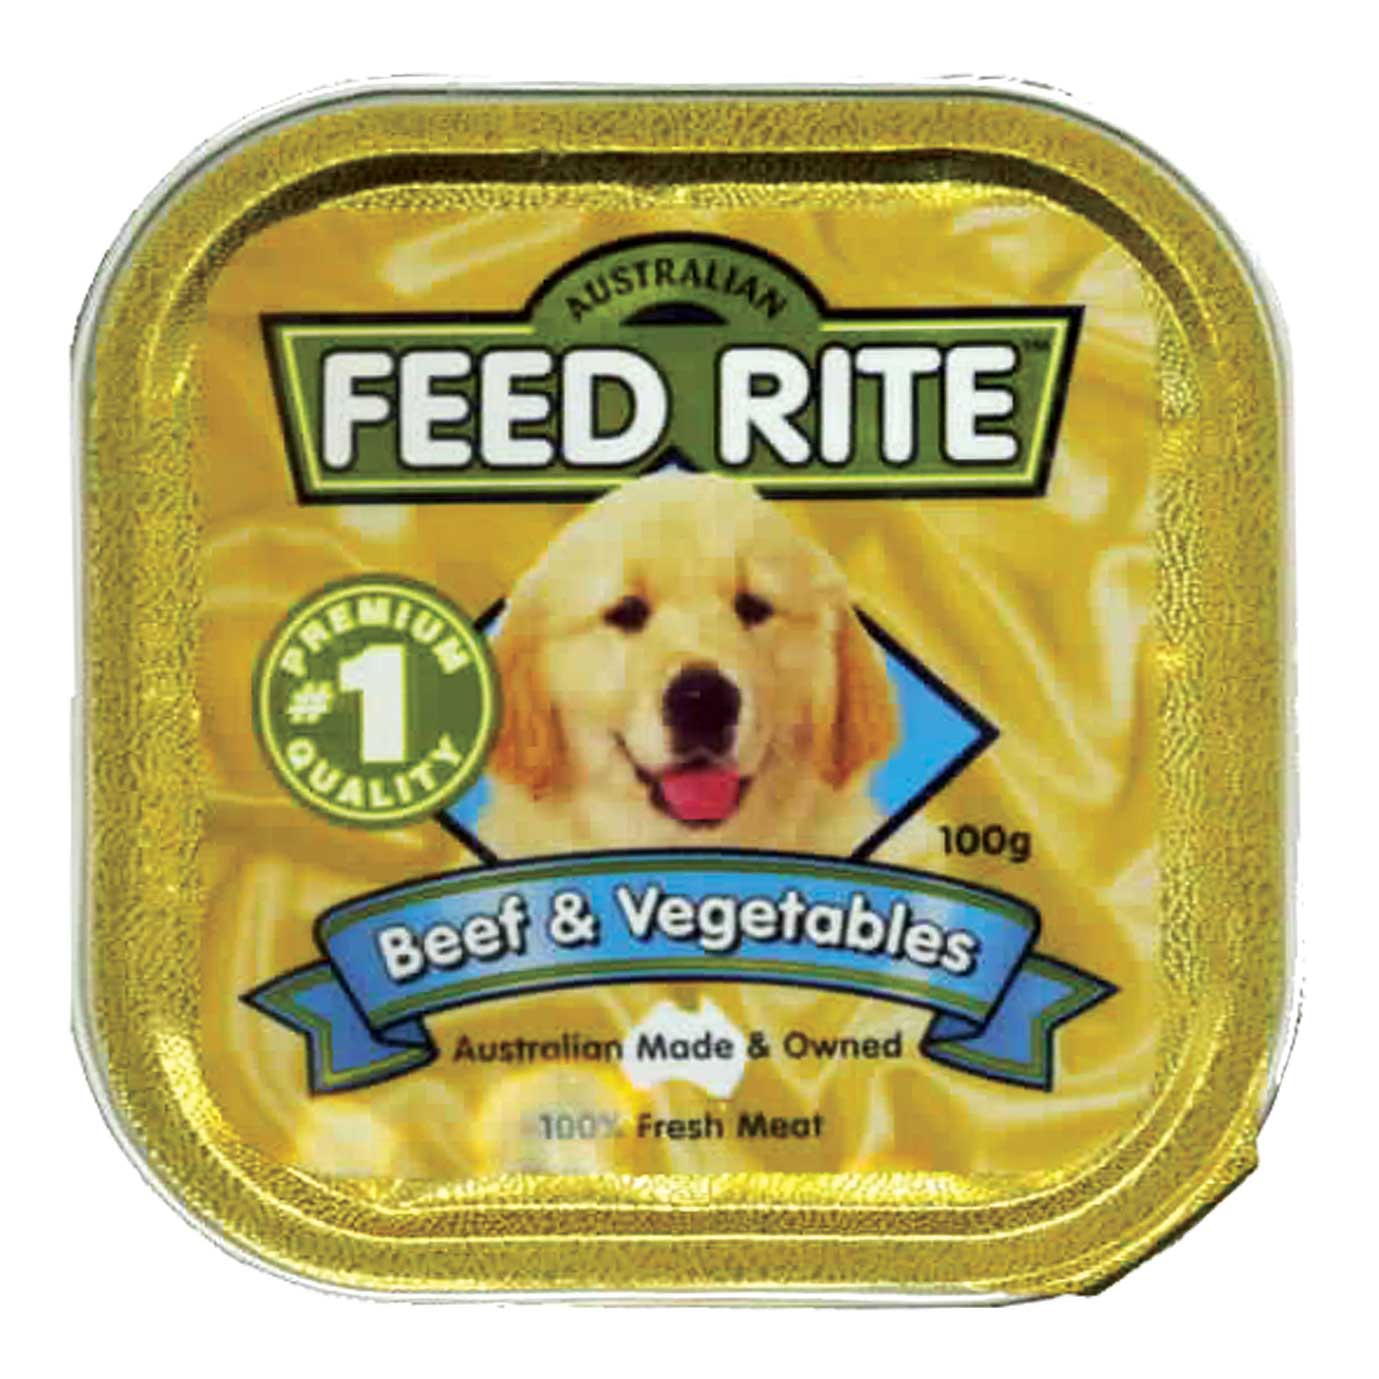 元氣便當犬用餐盒-牛肉與蔬菜
Beef & Vegetables